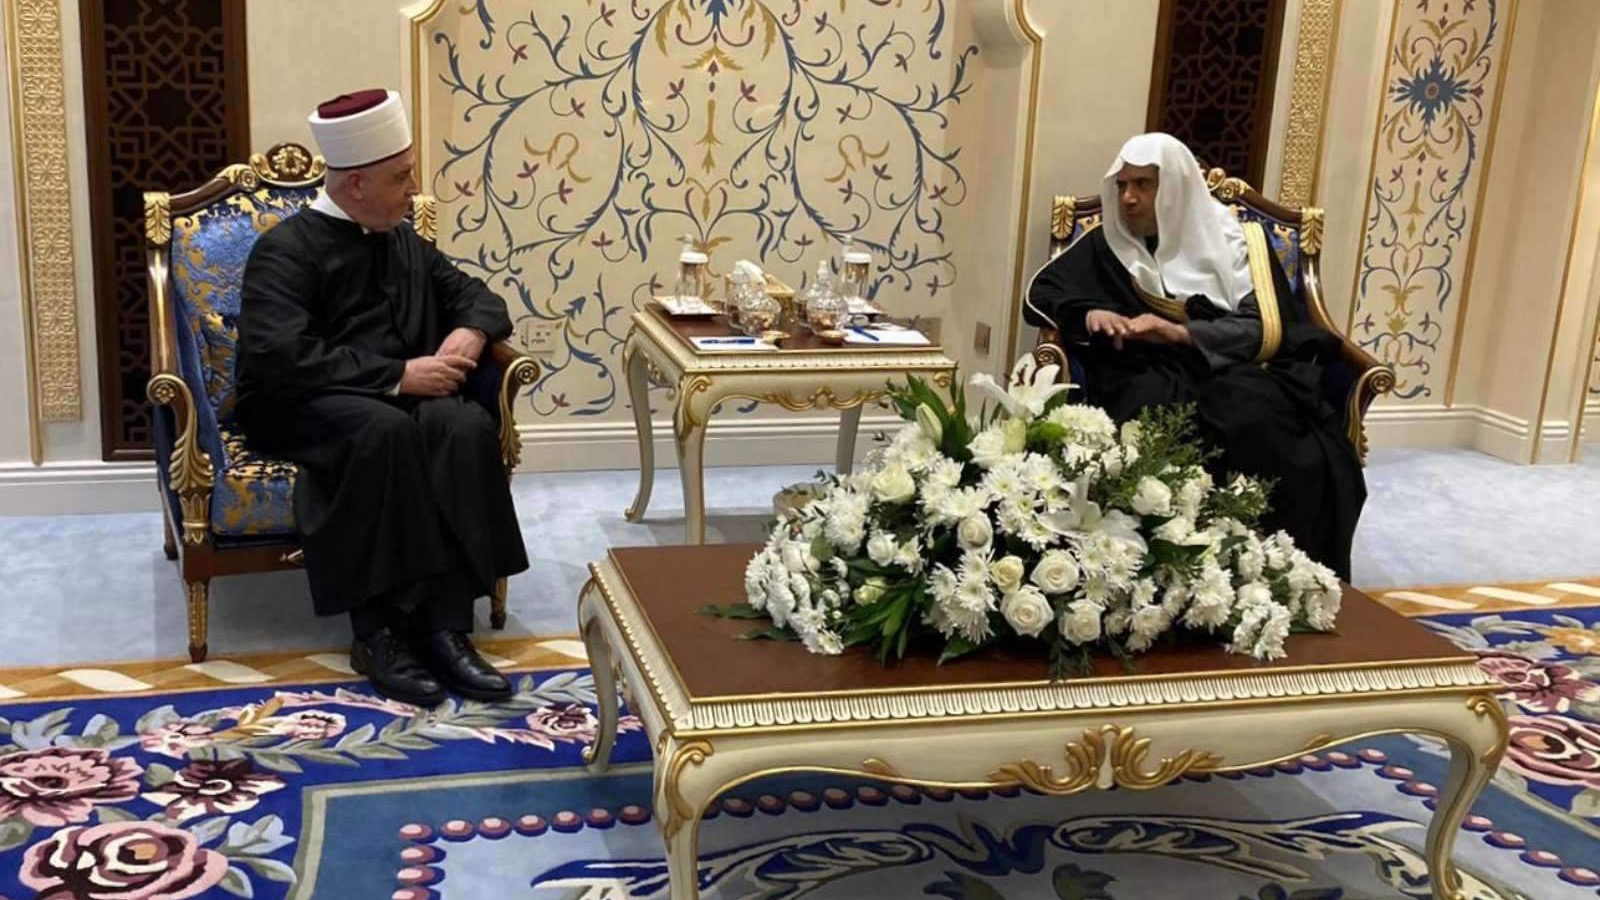 Reisul-ulema se sastao s generalnim sekretarom Lige muslimanskog svijeta - Rabite